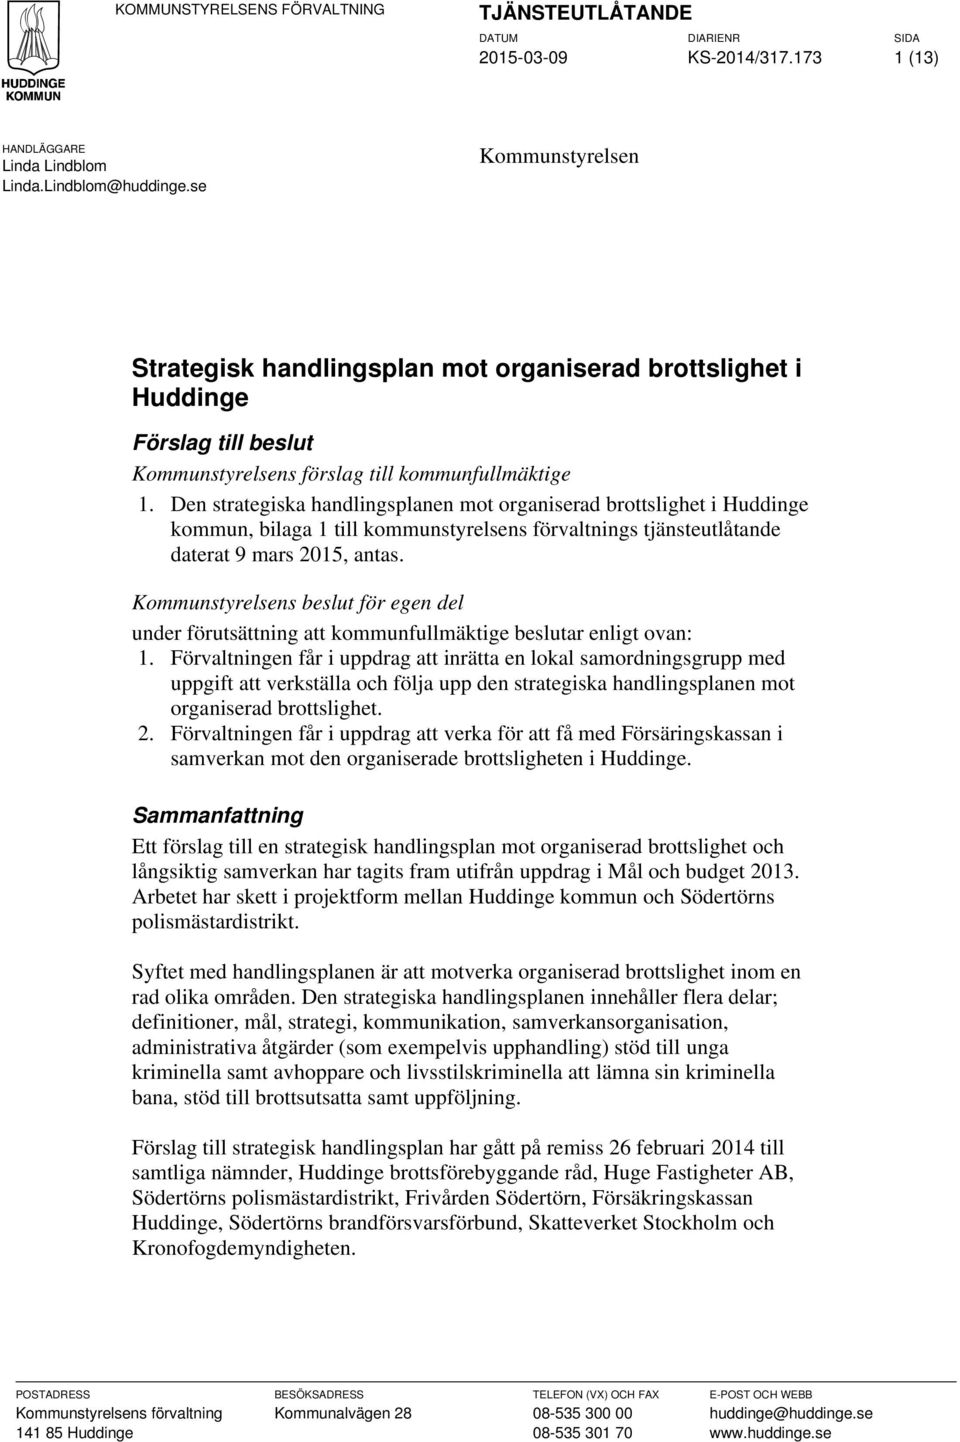 Den strategiska handlingsplanen mot organiserad brottslighet i Huddinge kommun, bilaga 1 till kommunstyrelsens förvaltnings tjänsteutlåtande daterat 9 mars 2015, antas.